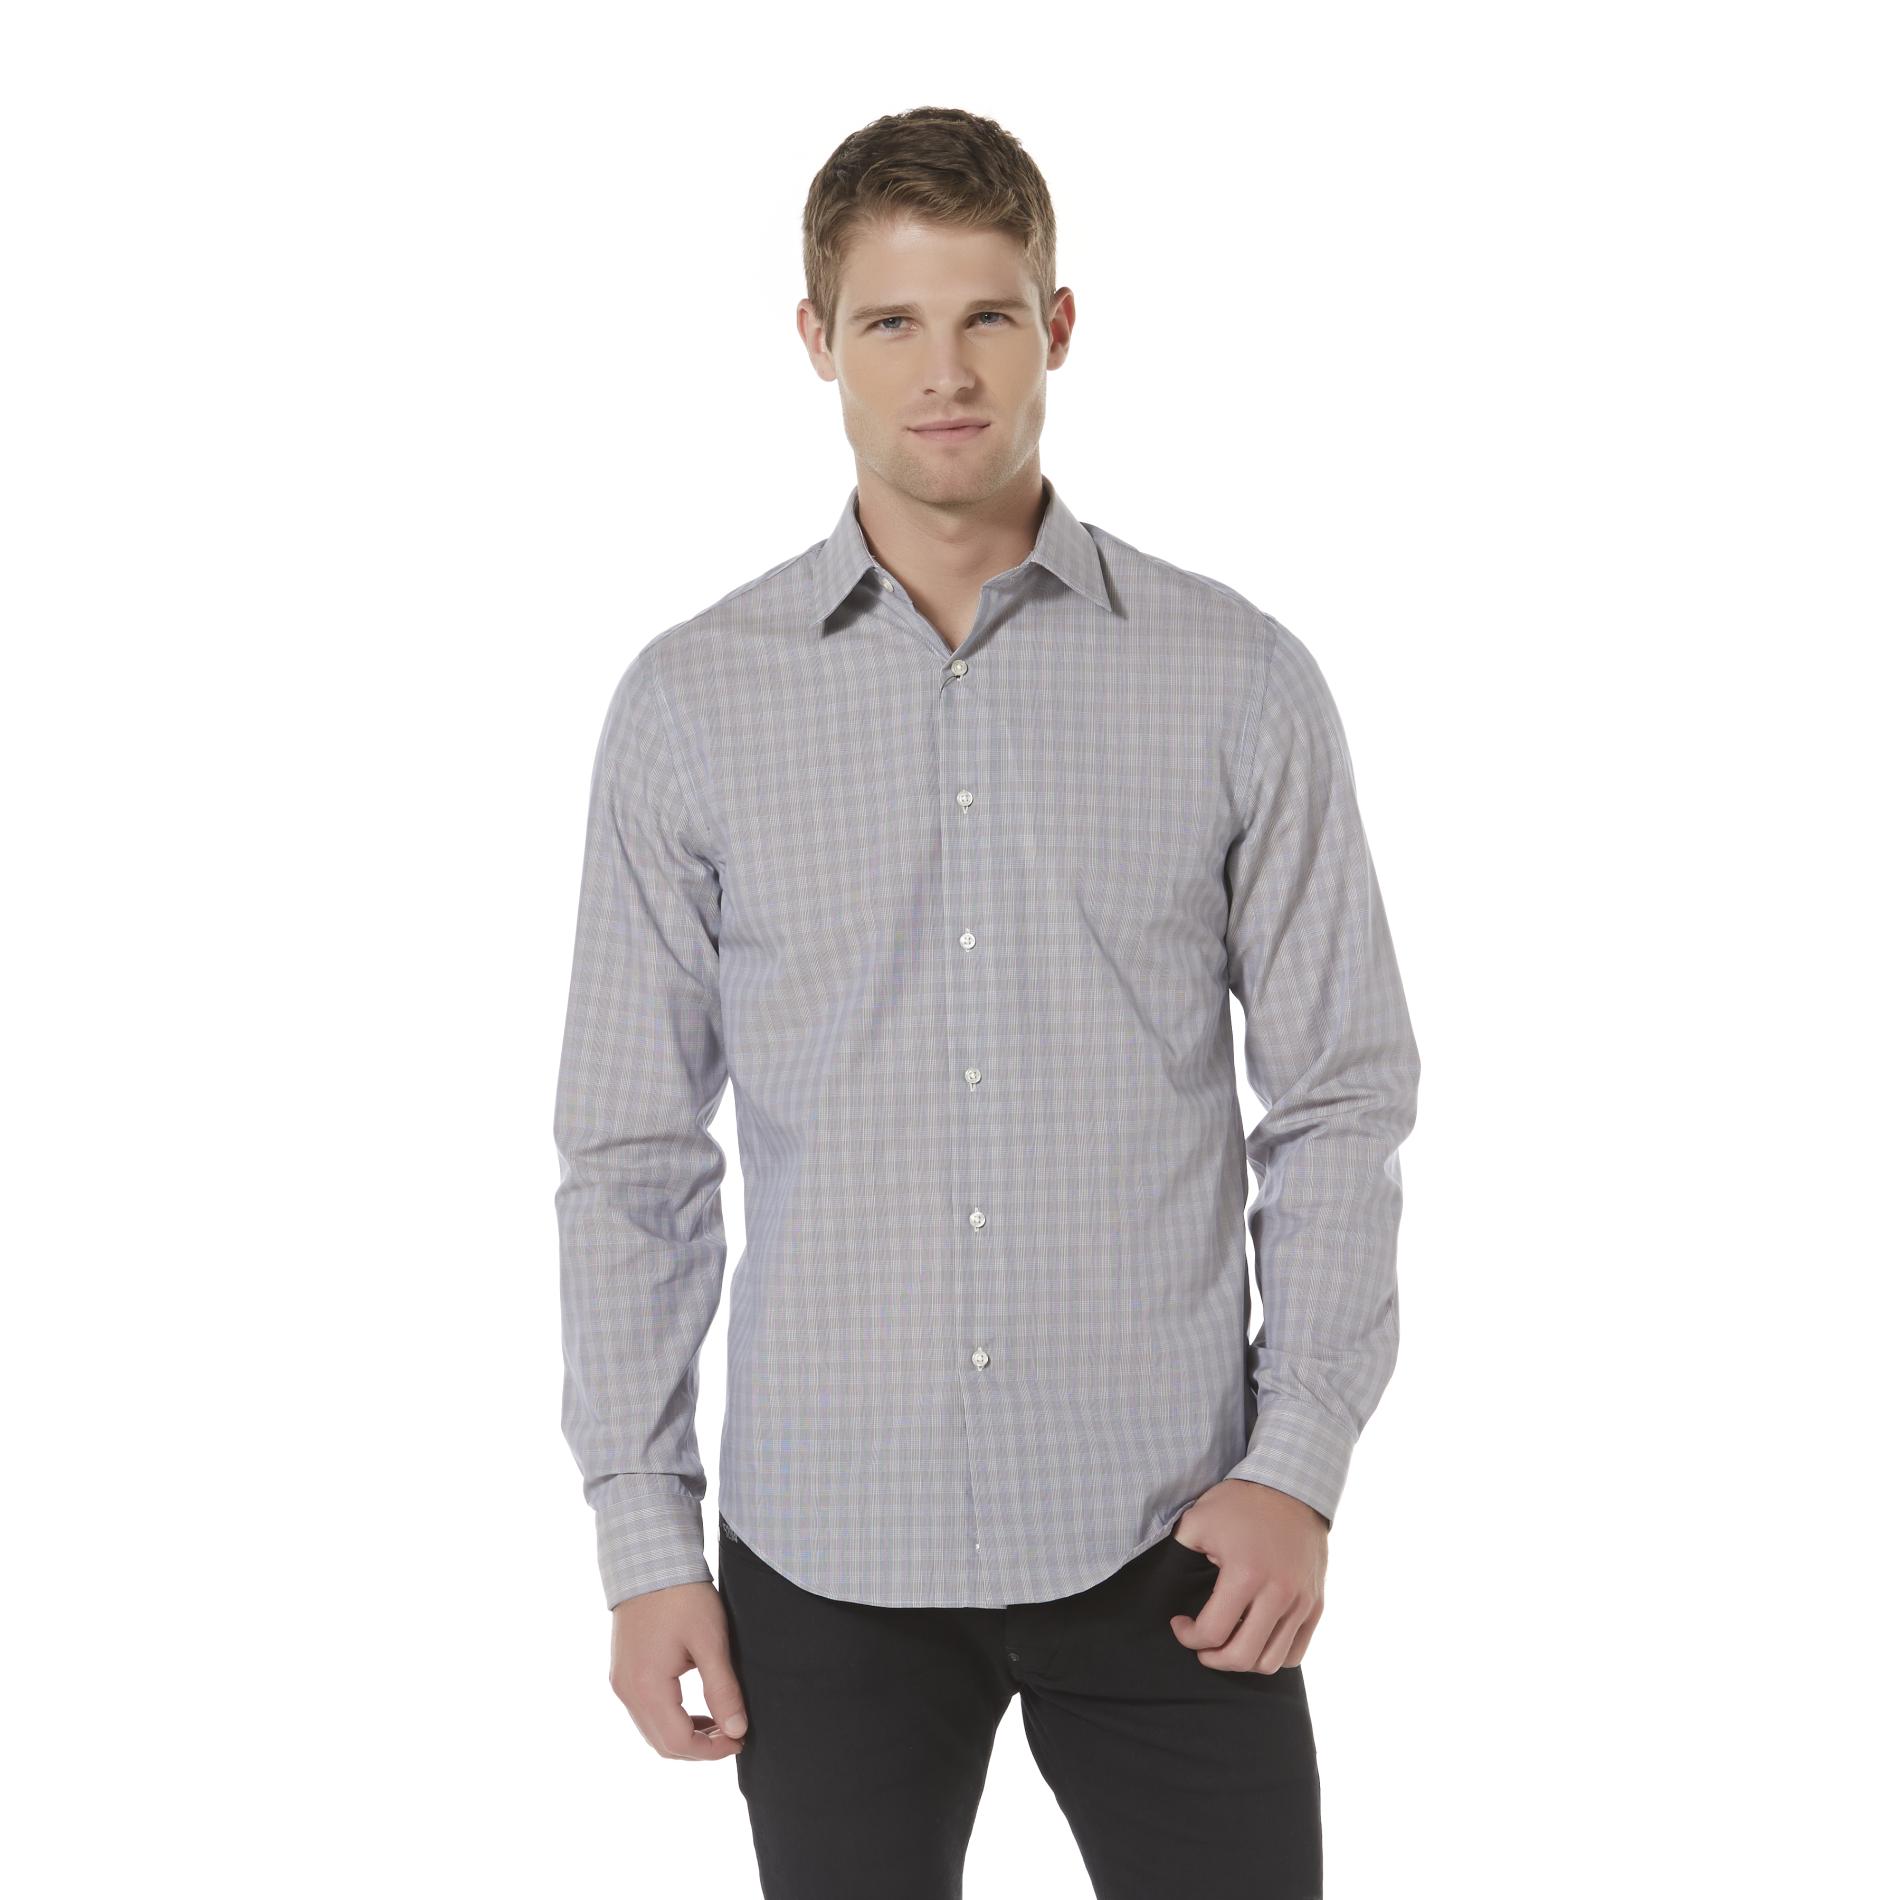 Structure Men's Dress Shirt - Checkered